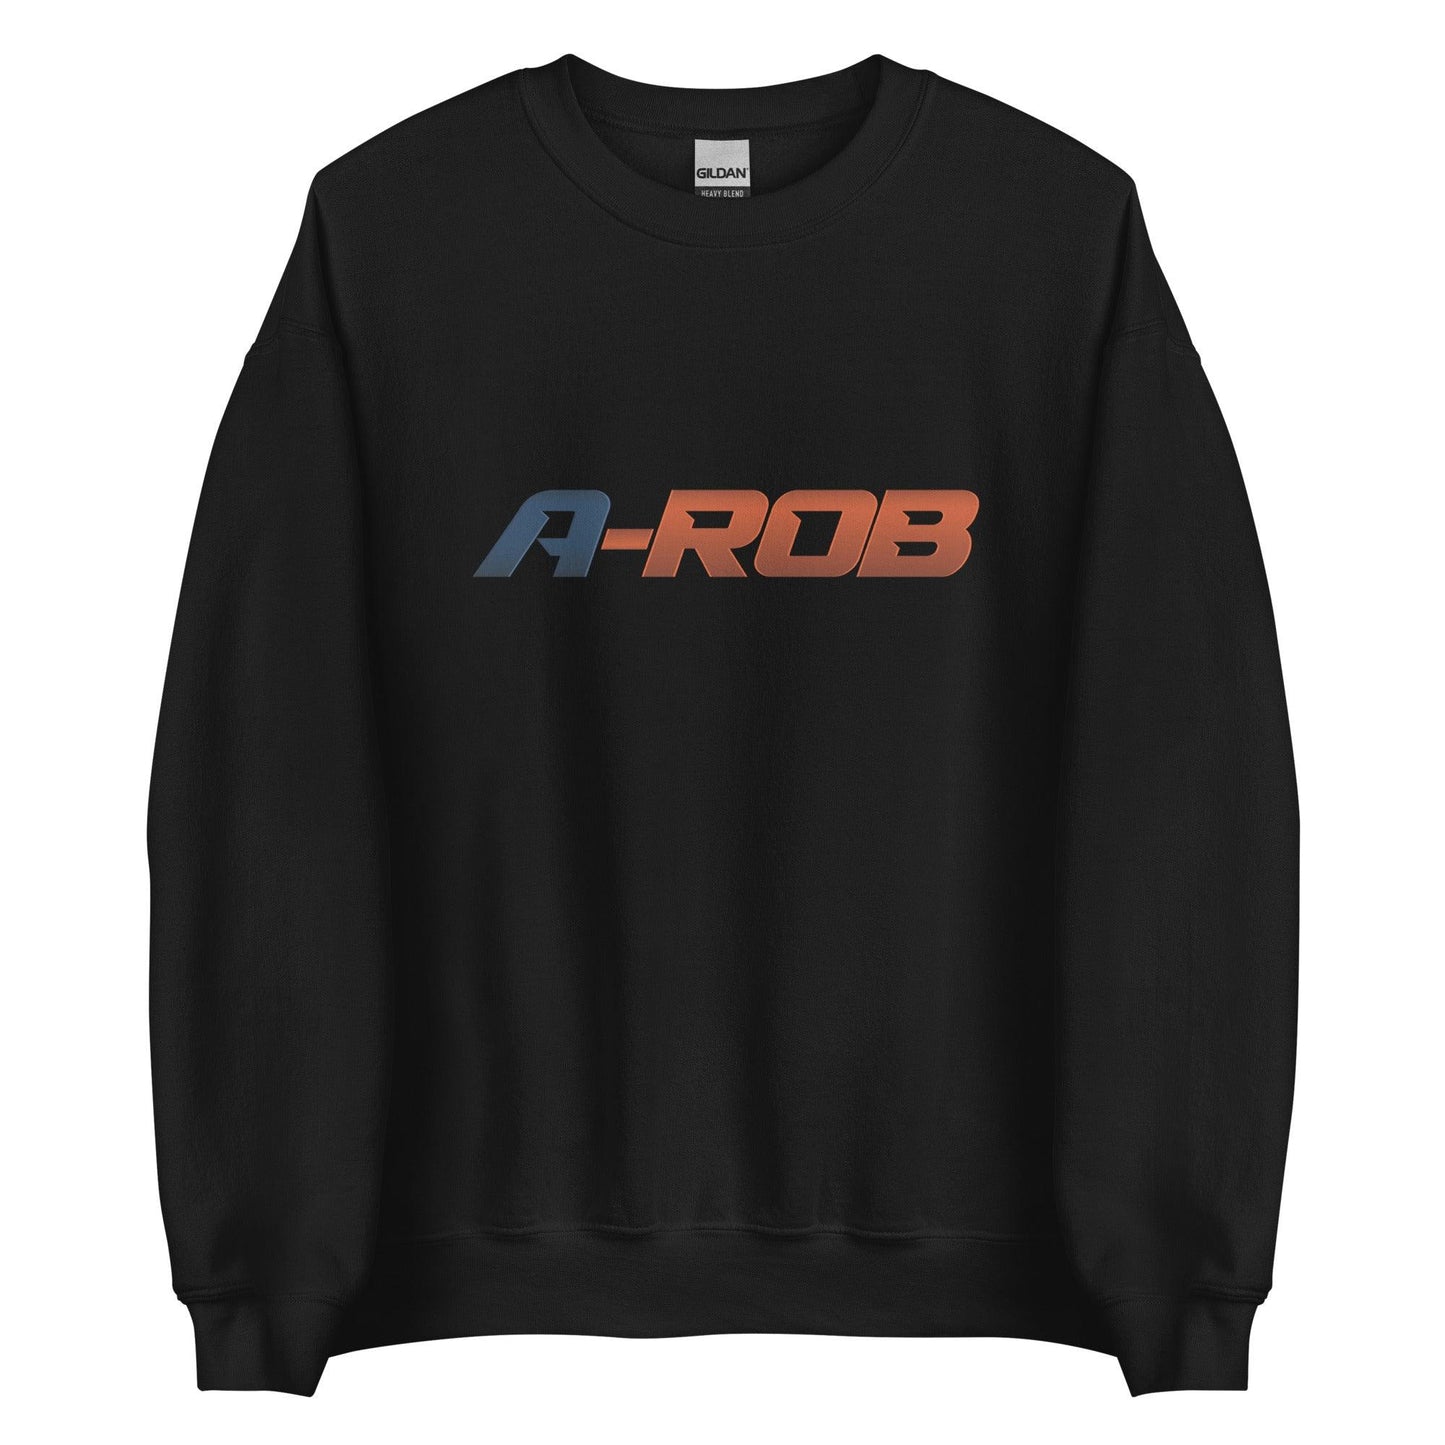 Anthony Robinson "A-ROB" Sweatshirt - Fan Arch